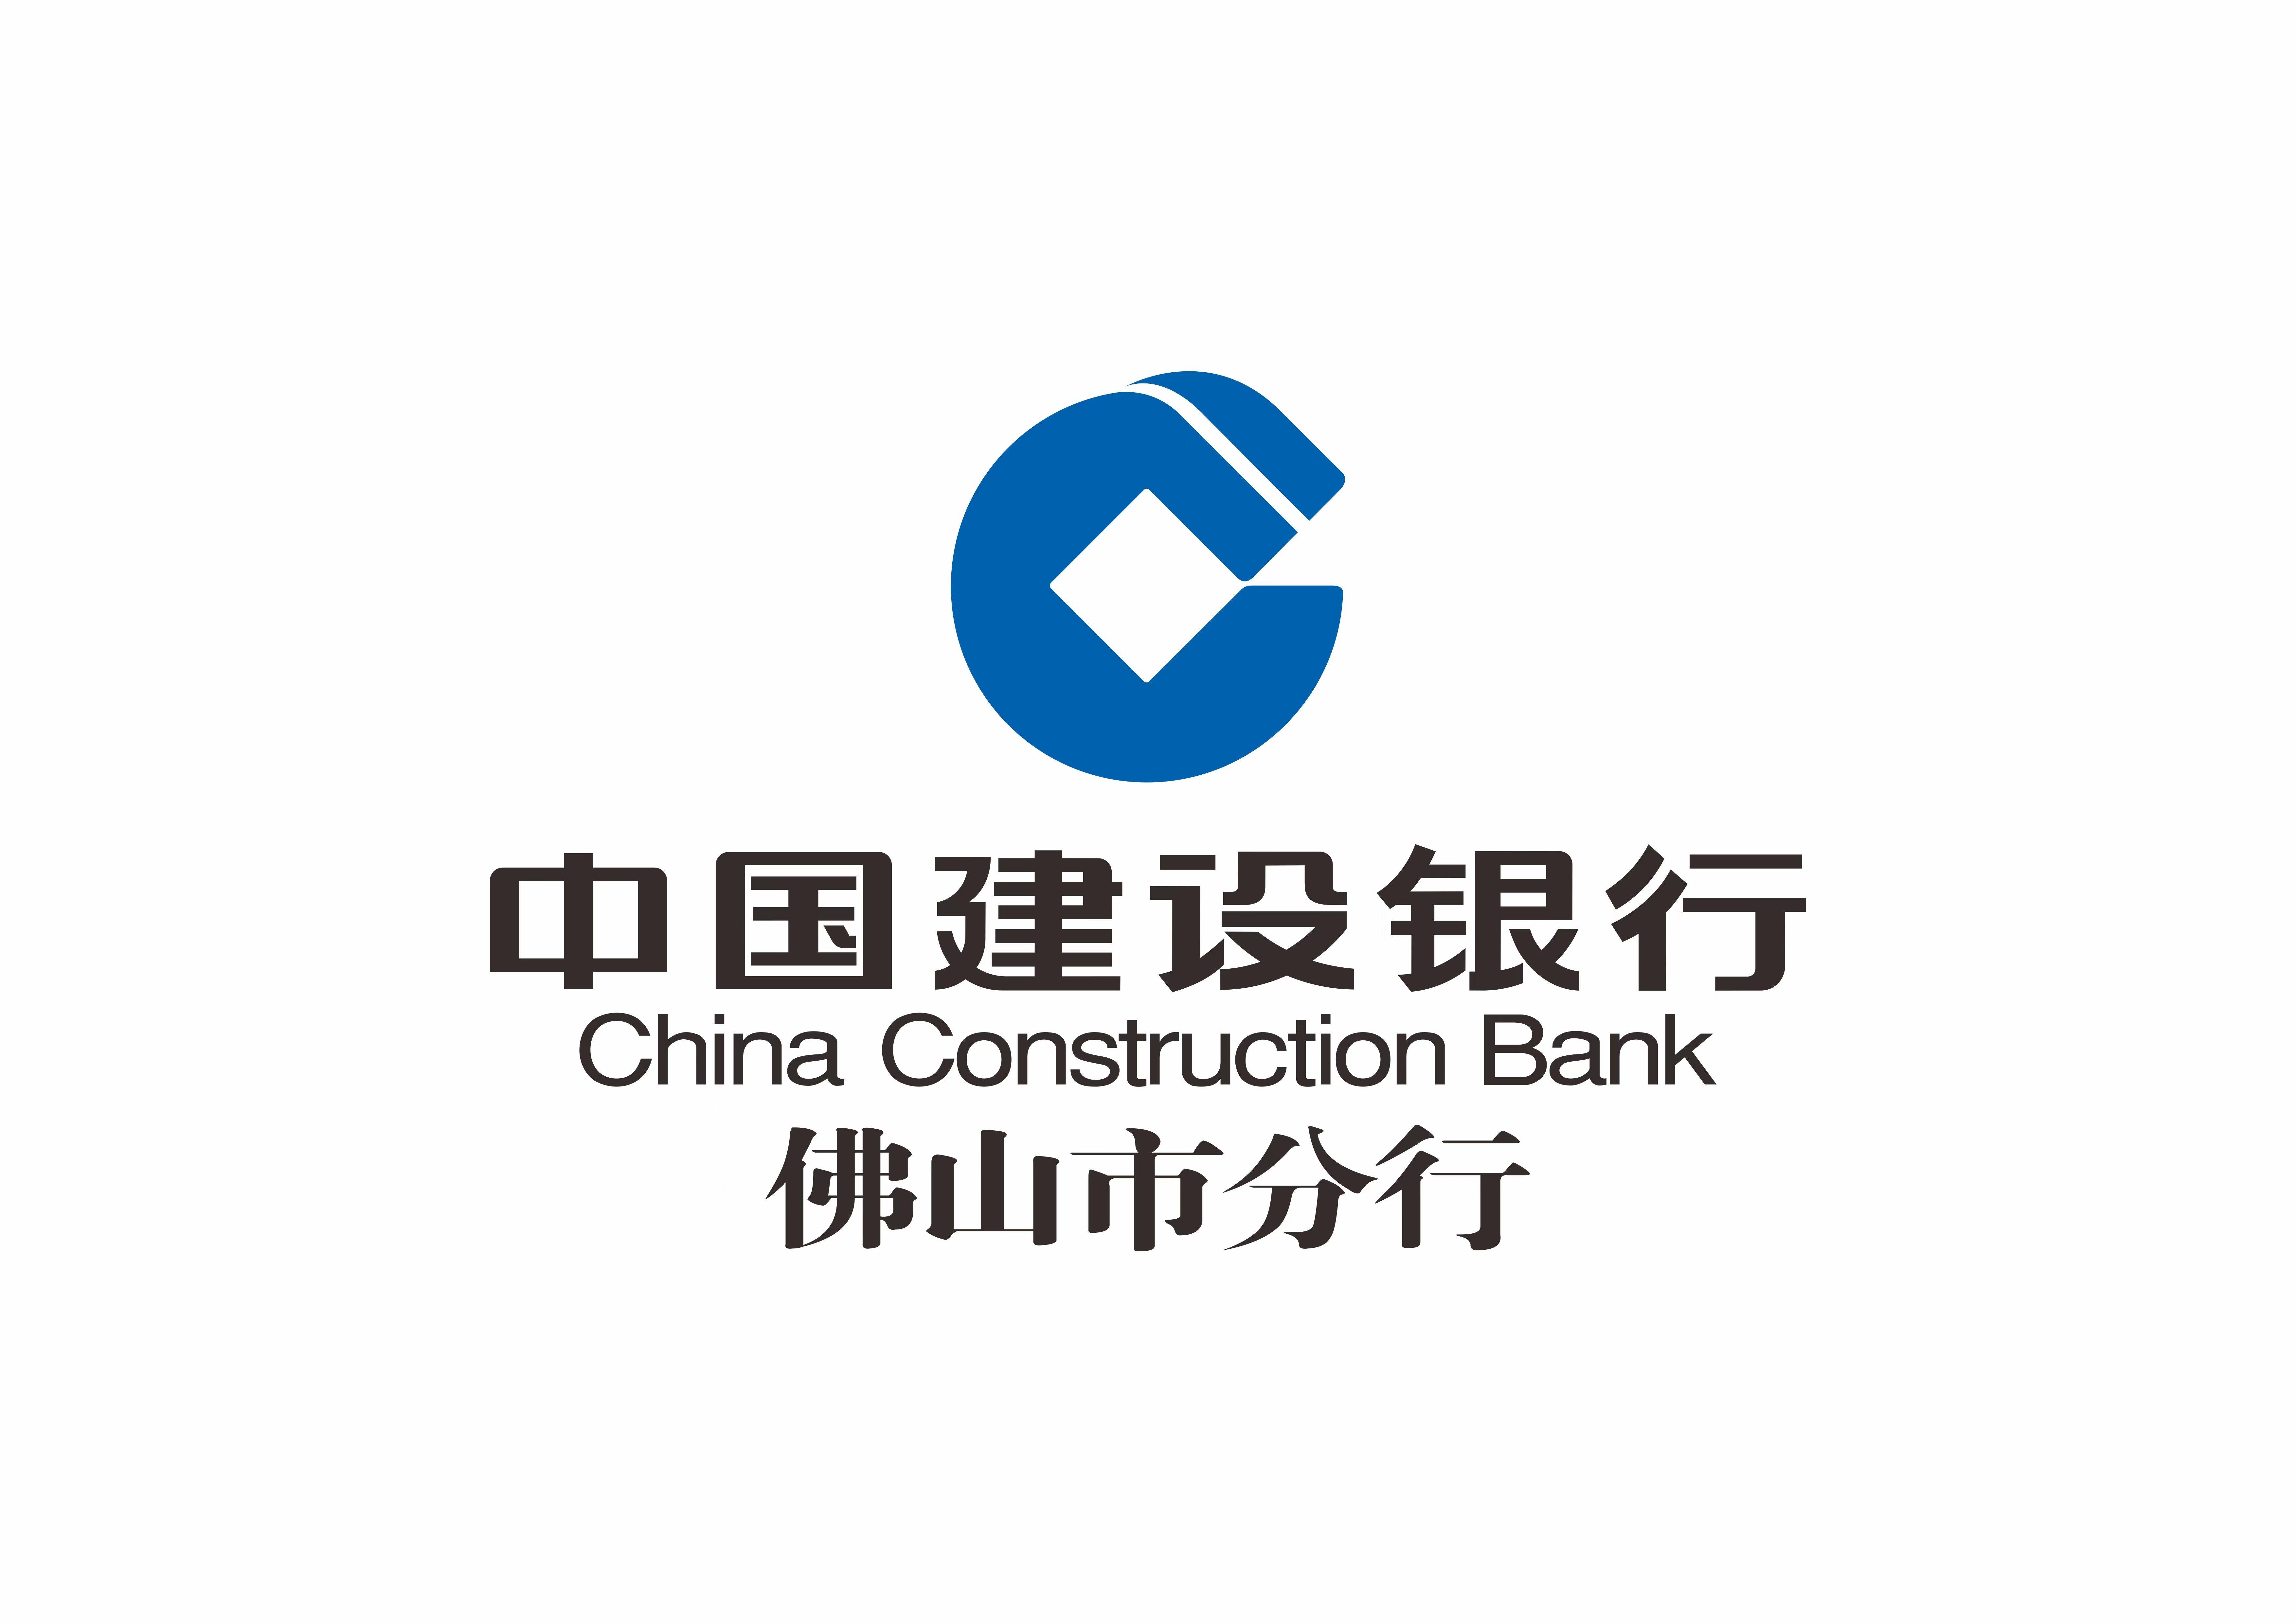 中国建设银行手机银行:中国建设银行佛山分行准对接企业需求